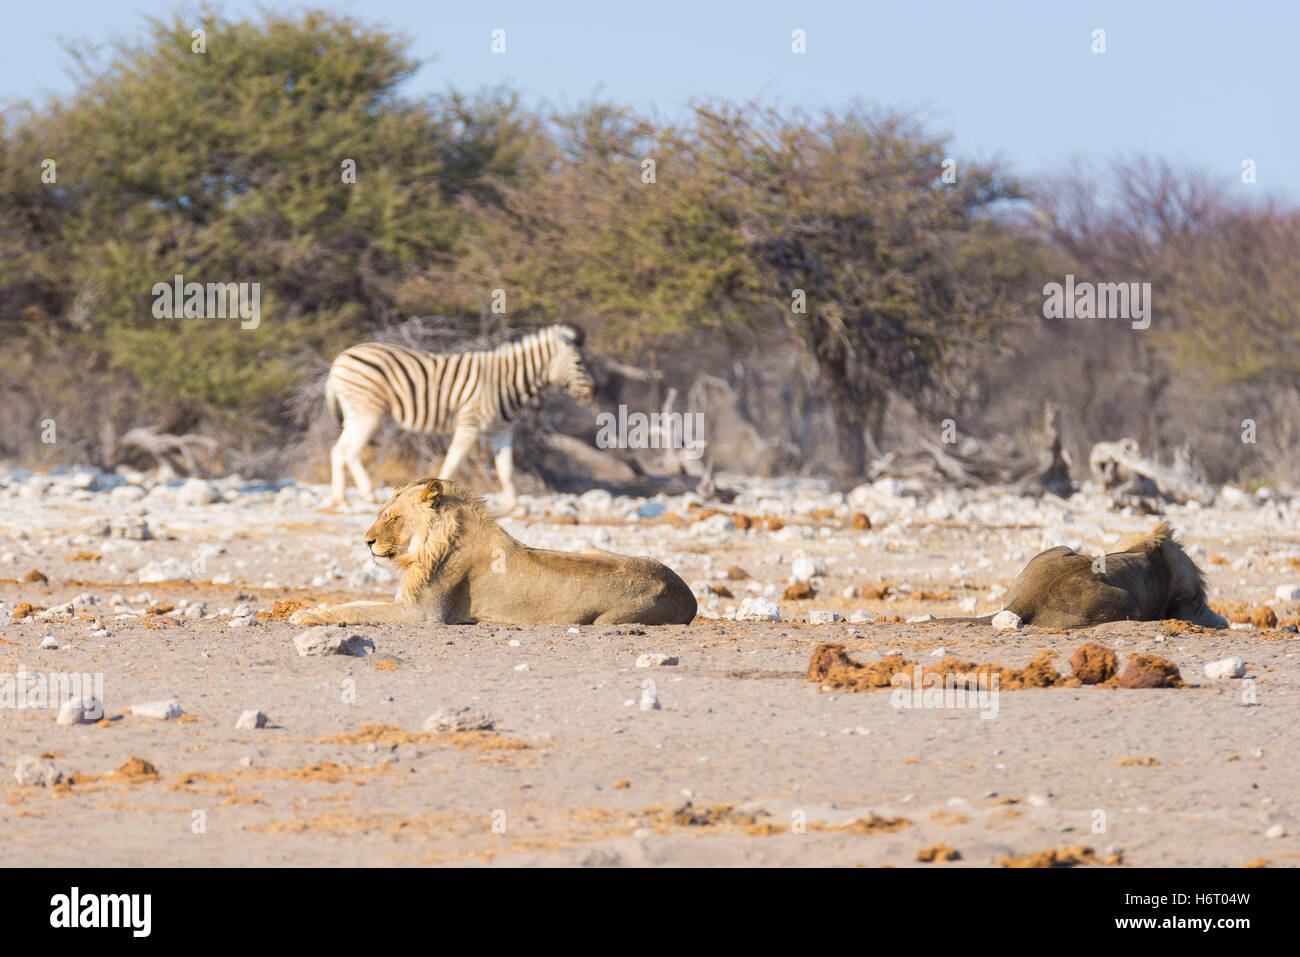 Deux jeunes lions paresseux mâle allongé sur le sol. Zebra (marche) flou artistique dans l'arrière-plan. Safari de faune en Banque D'Images